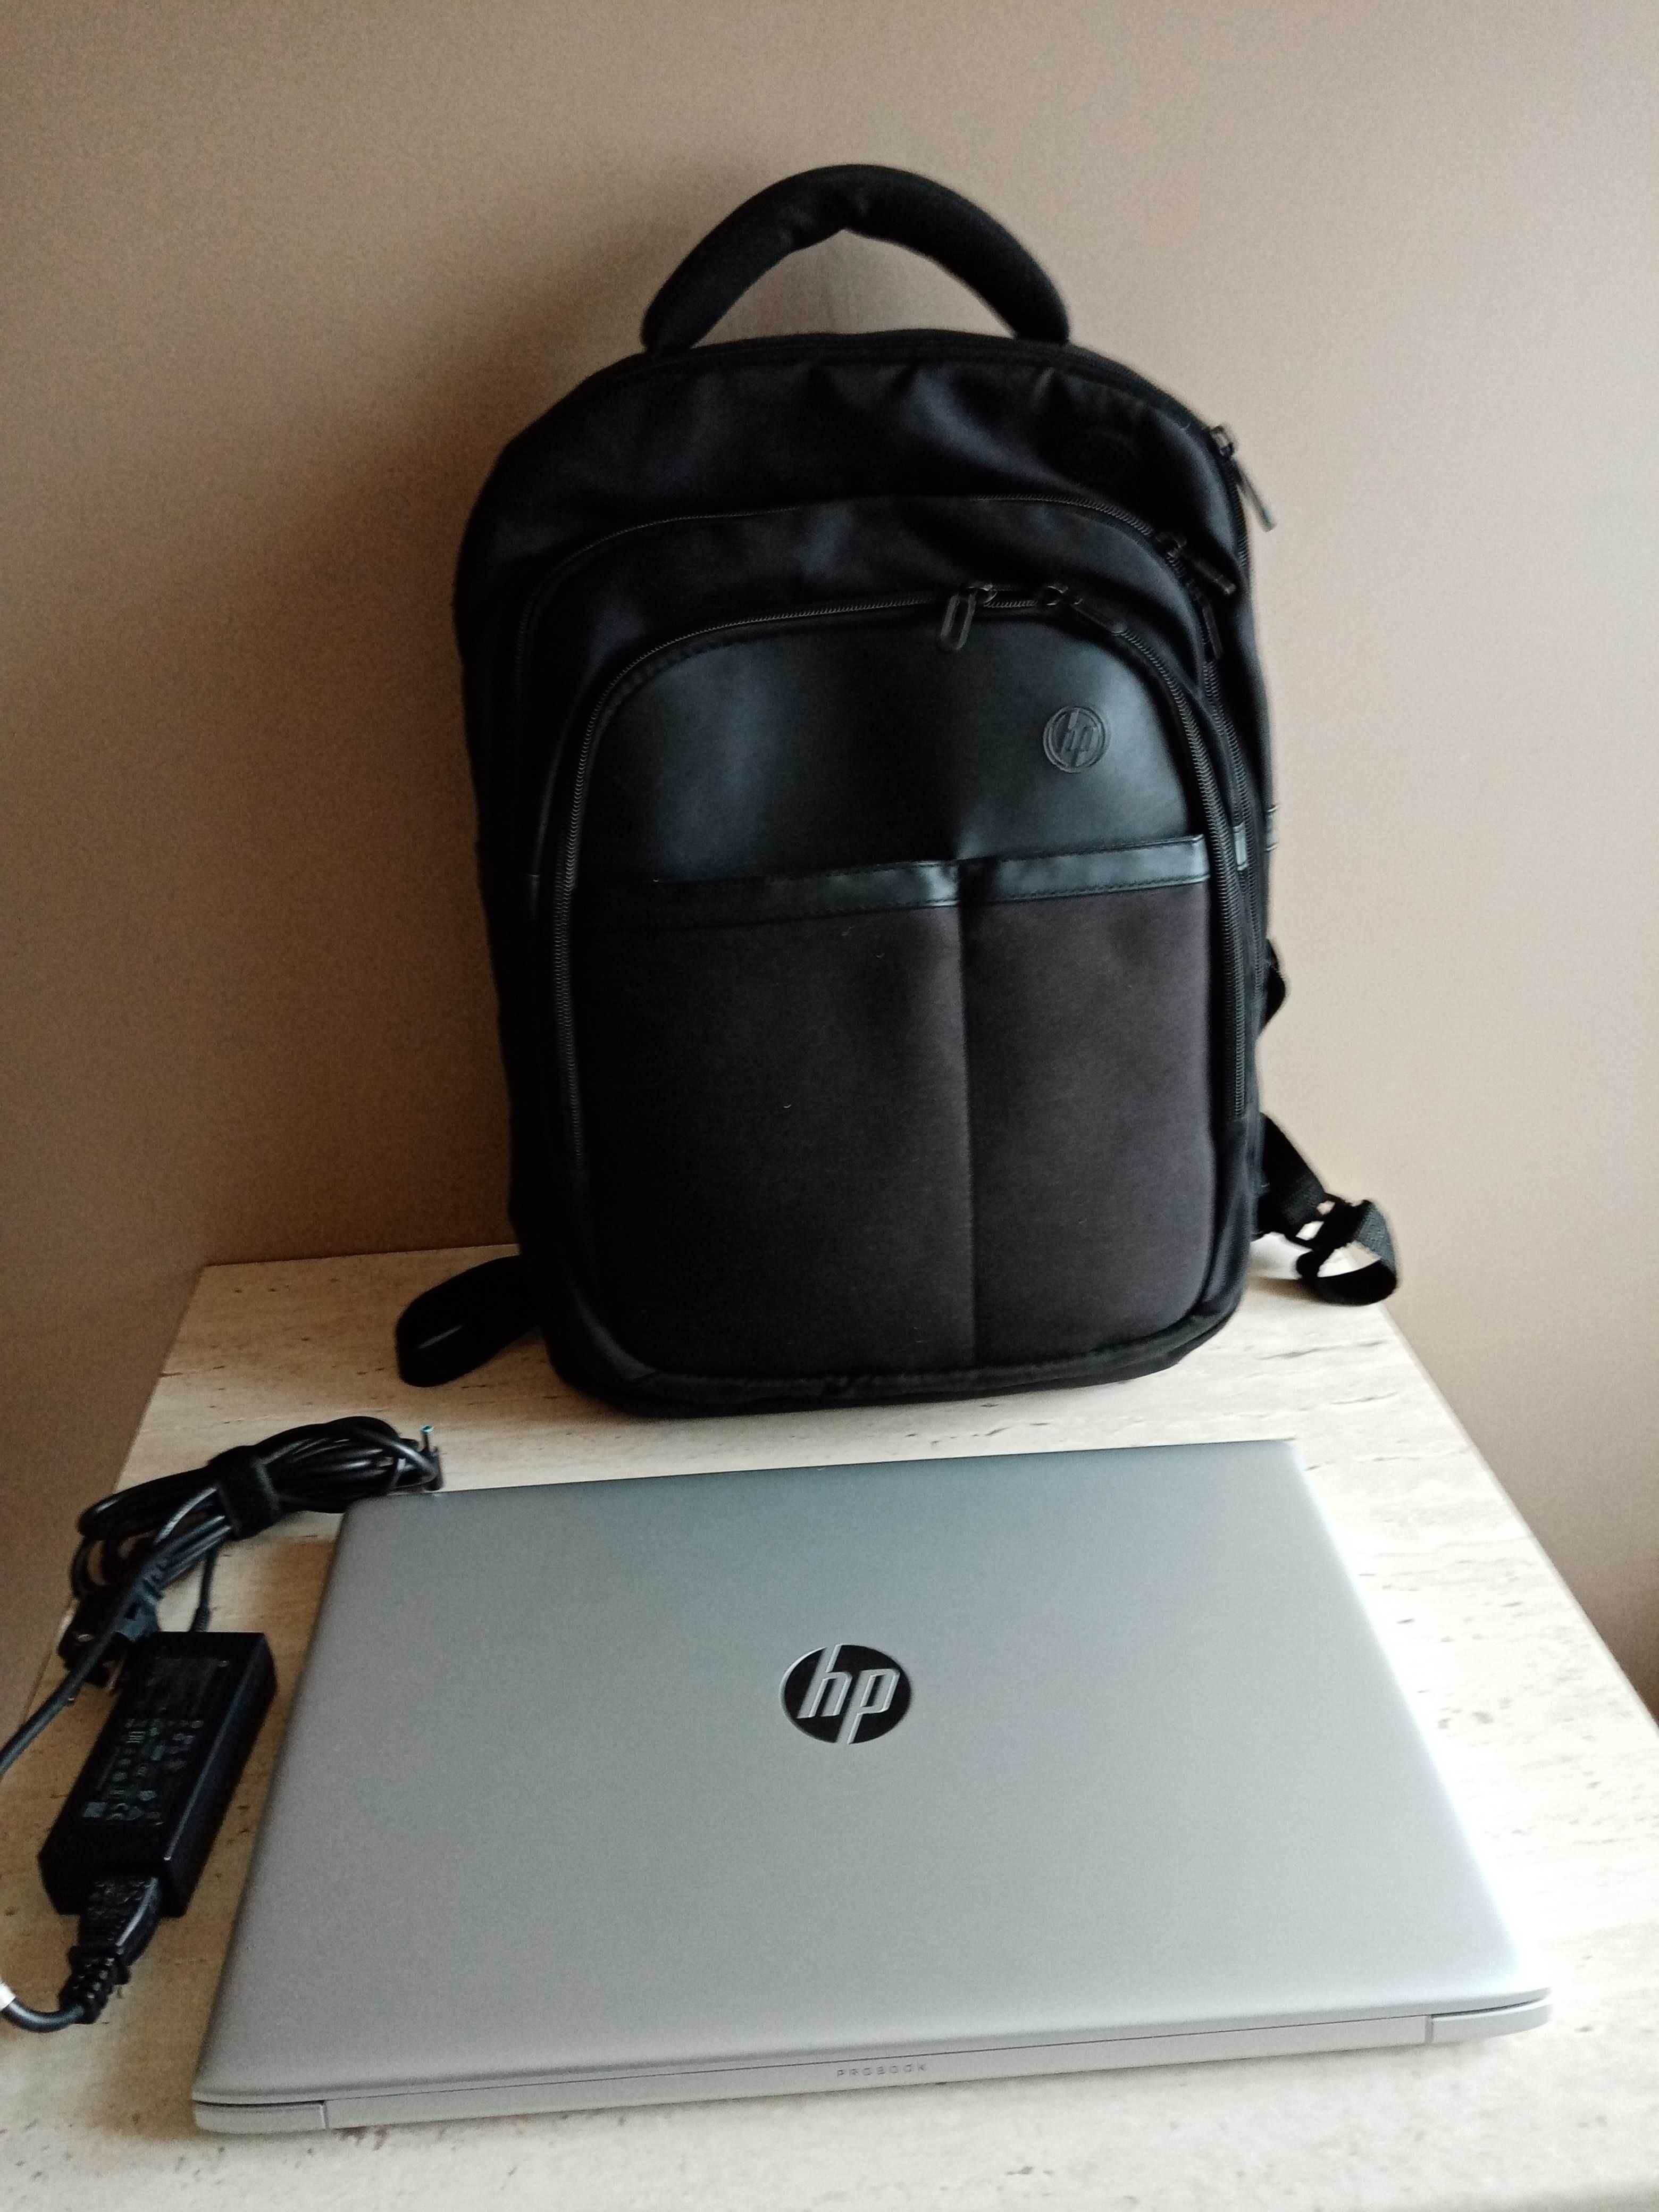 Laptop HP PROBOOK 470 G5, 17,3''  plus plecak HP. Stan super